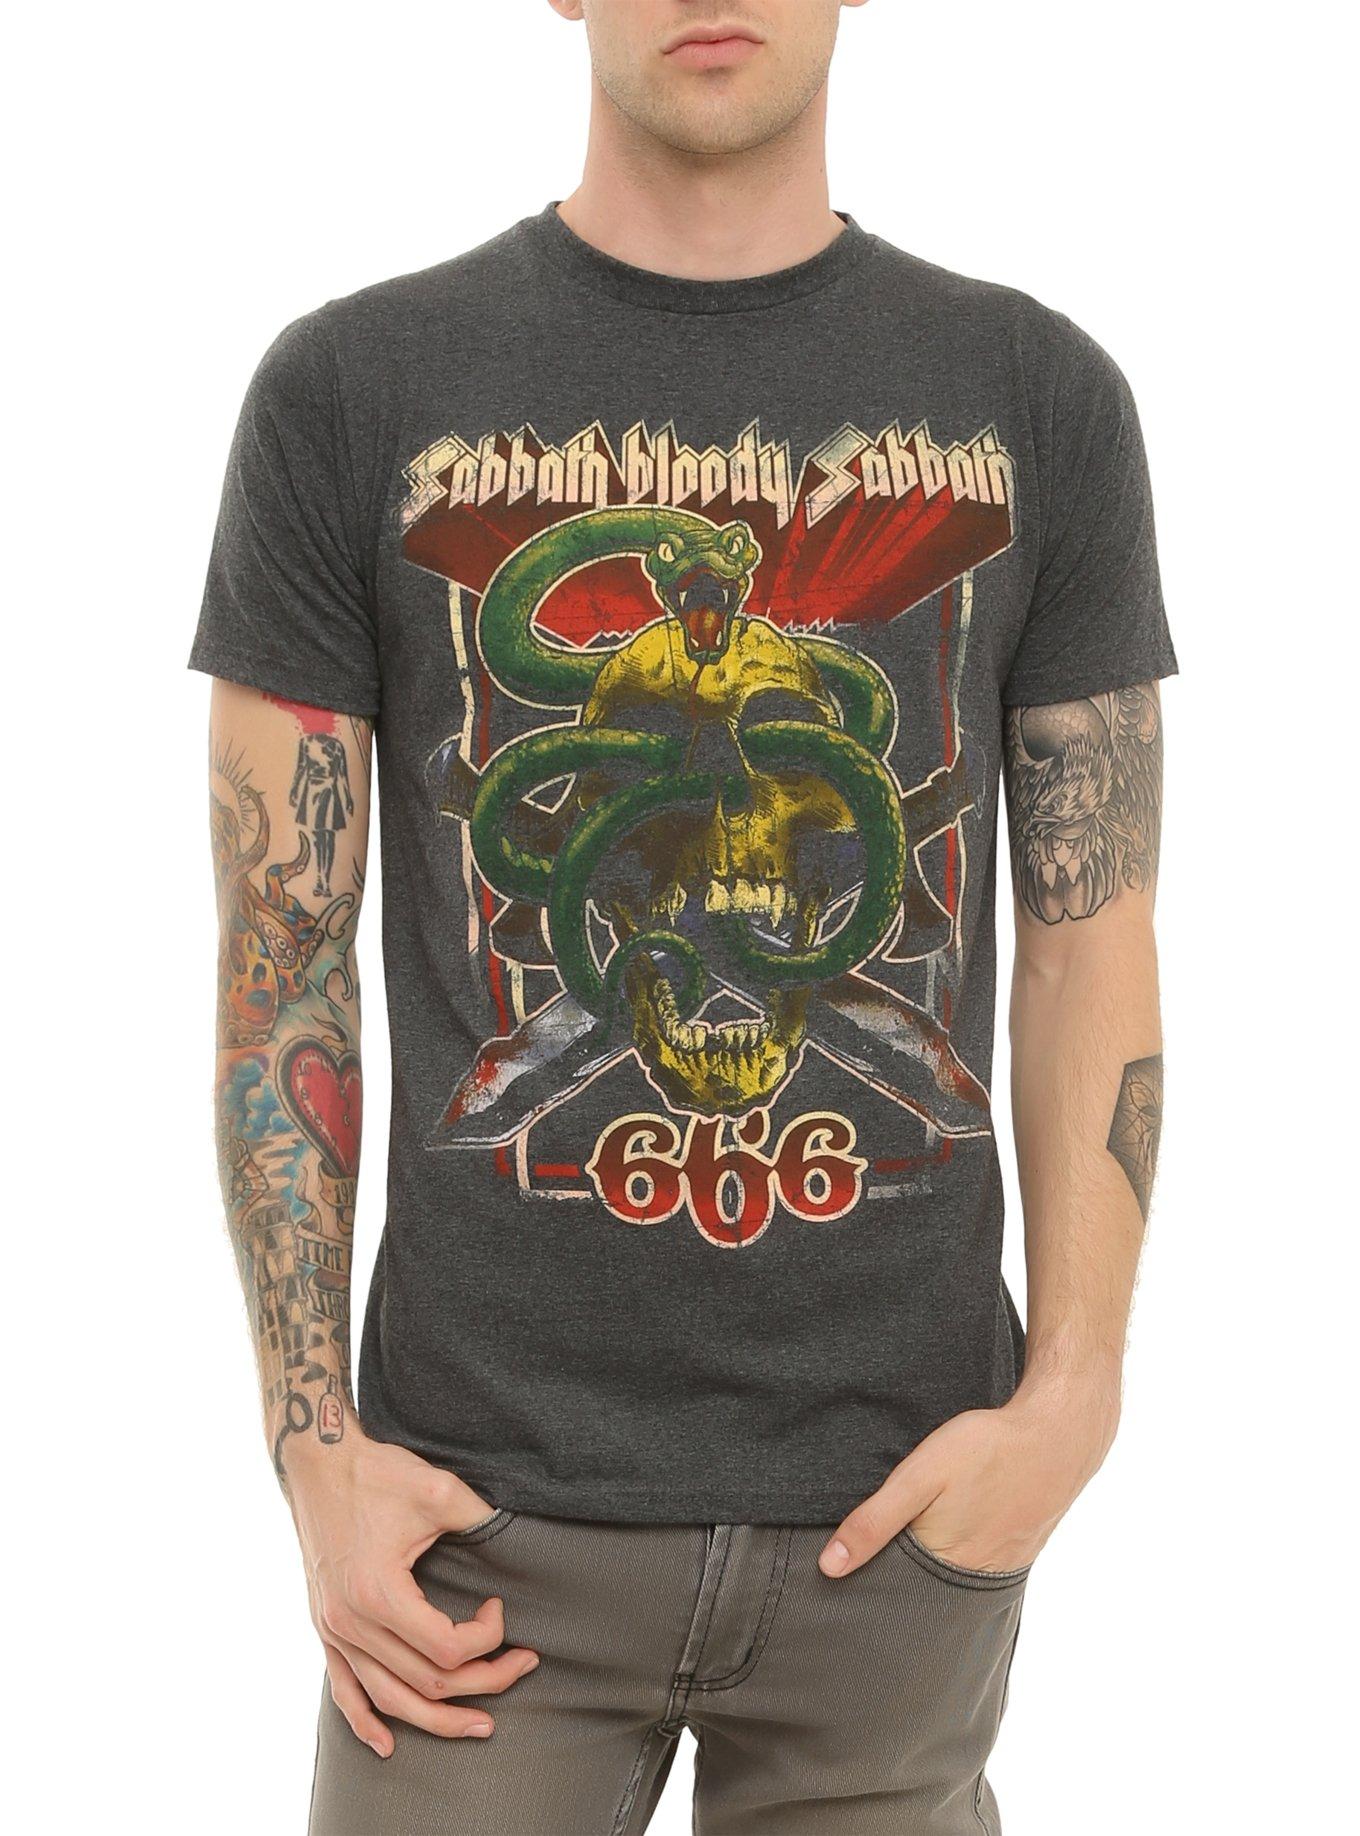 Black Sabbath Sabbath Bloody Sabbath T-Shirt, BLACK, hi-res